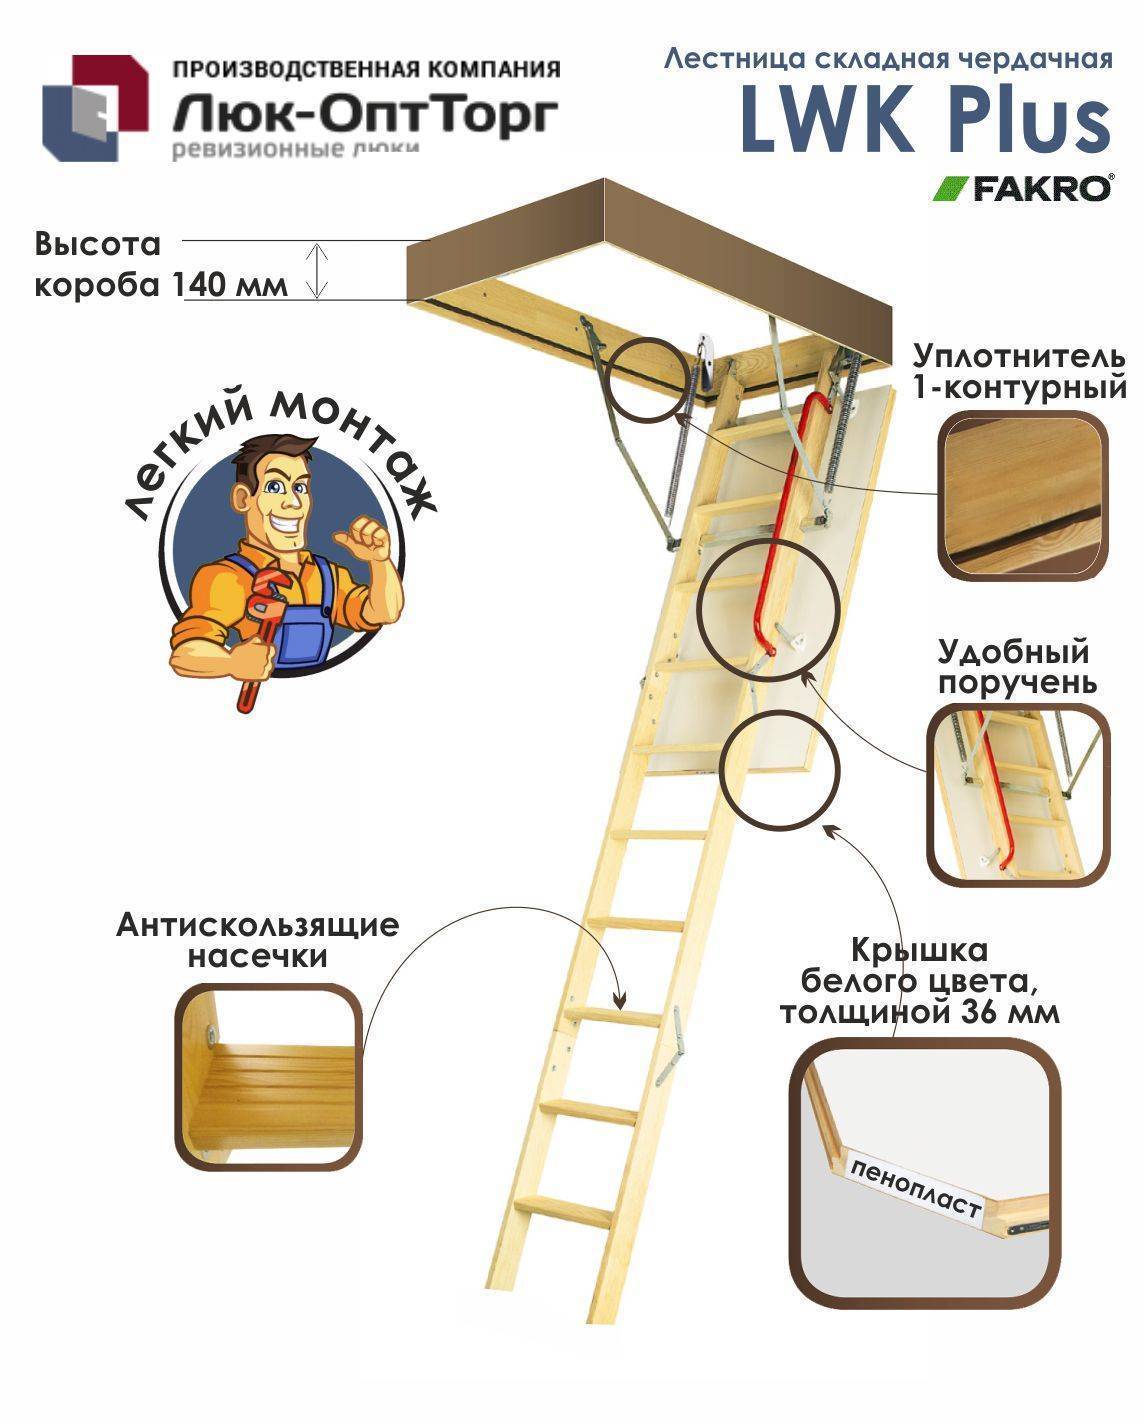 Складные чердачные лестницы видео-инструкция по монтажу своими руками, особенности лестничных конструкций на чердак, цена, фото